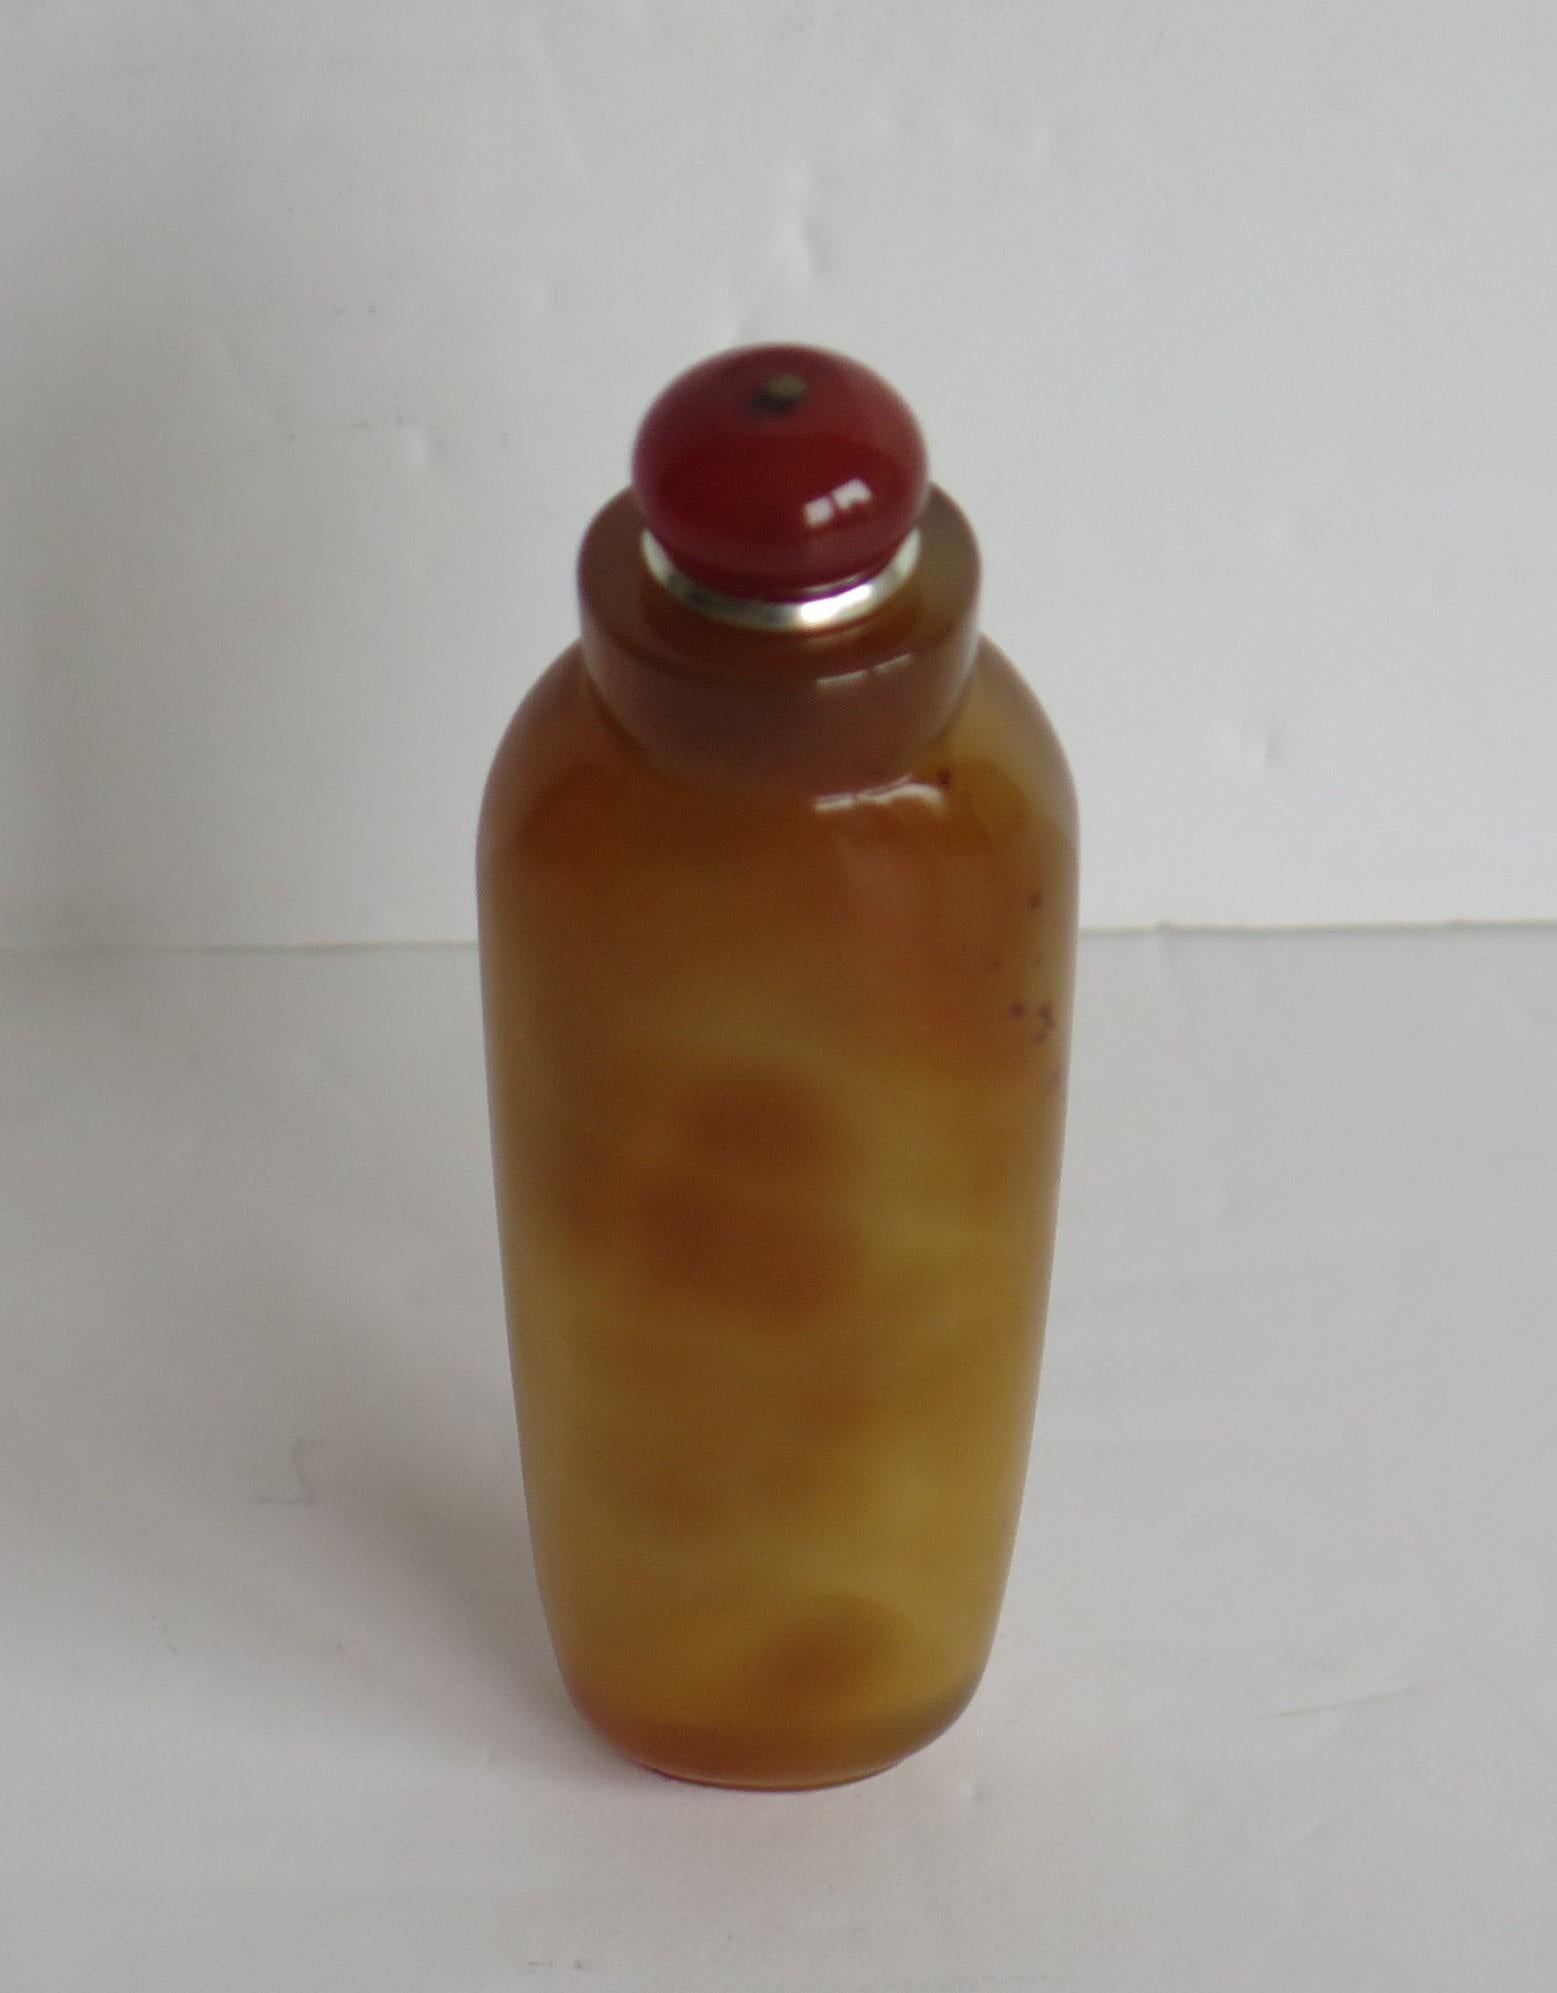 Dies ist eine schöne chinesische Export Schnupftabakflasche, komplett mit seinem Löffel oben und aus einem natürlichen Achat, handgeschnitzten Stein, mit schönen Bernsteinfarben, die wir auf die erste Hälfte des 20. Jahrhunderts, ca. 1940.

Die